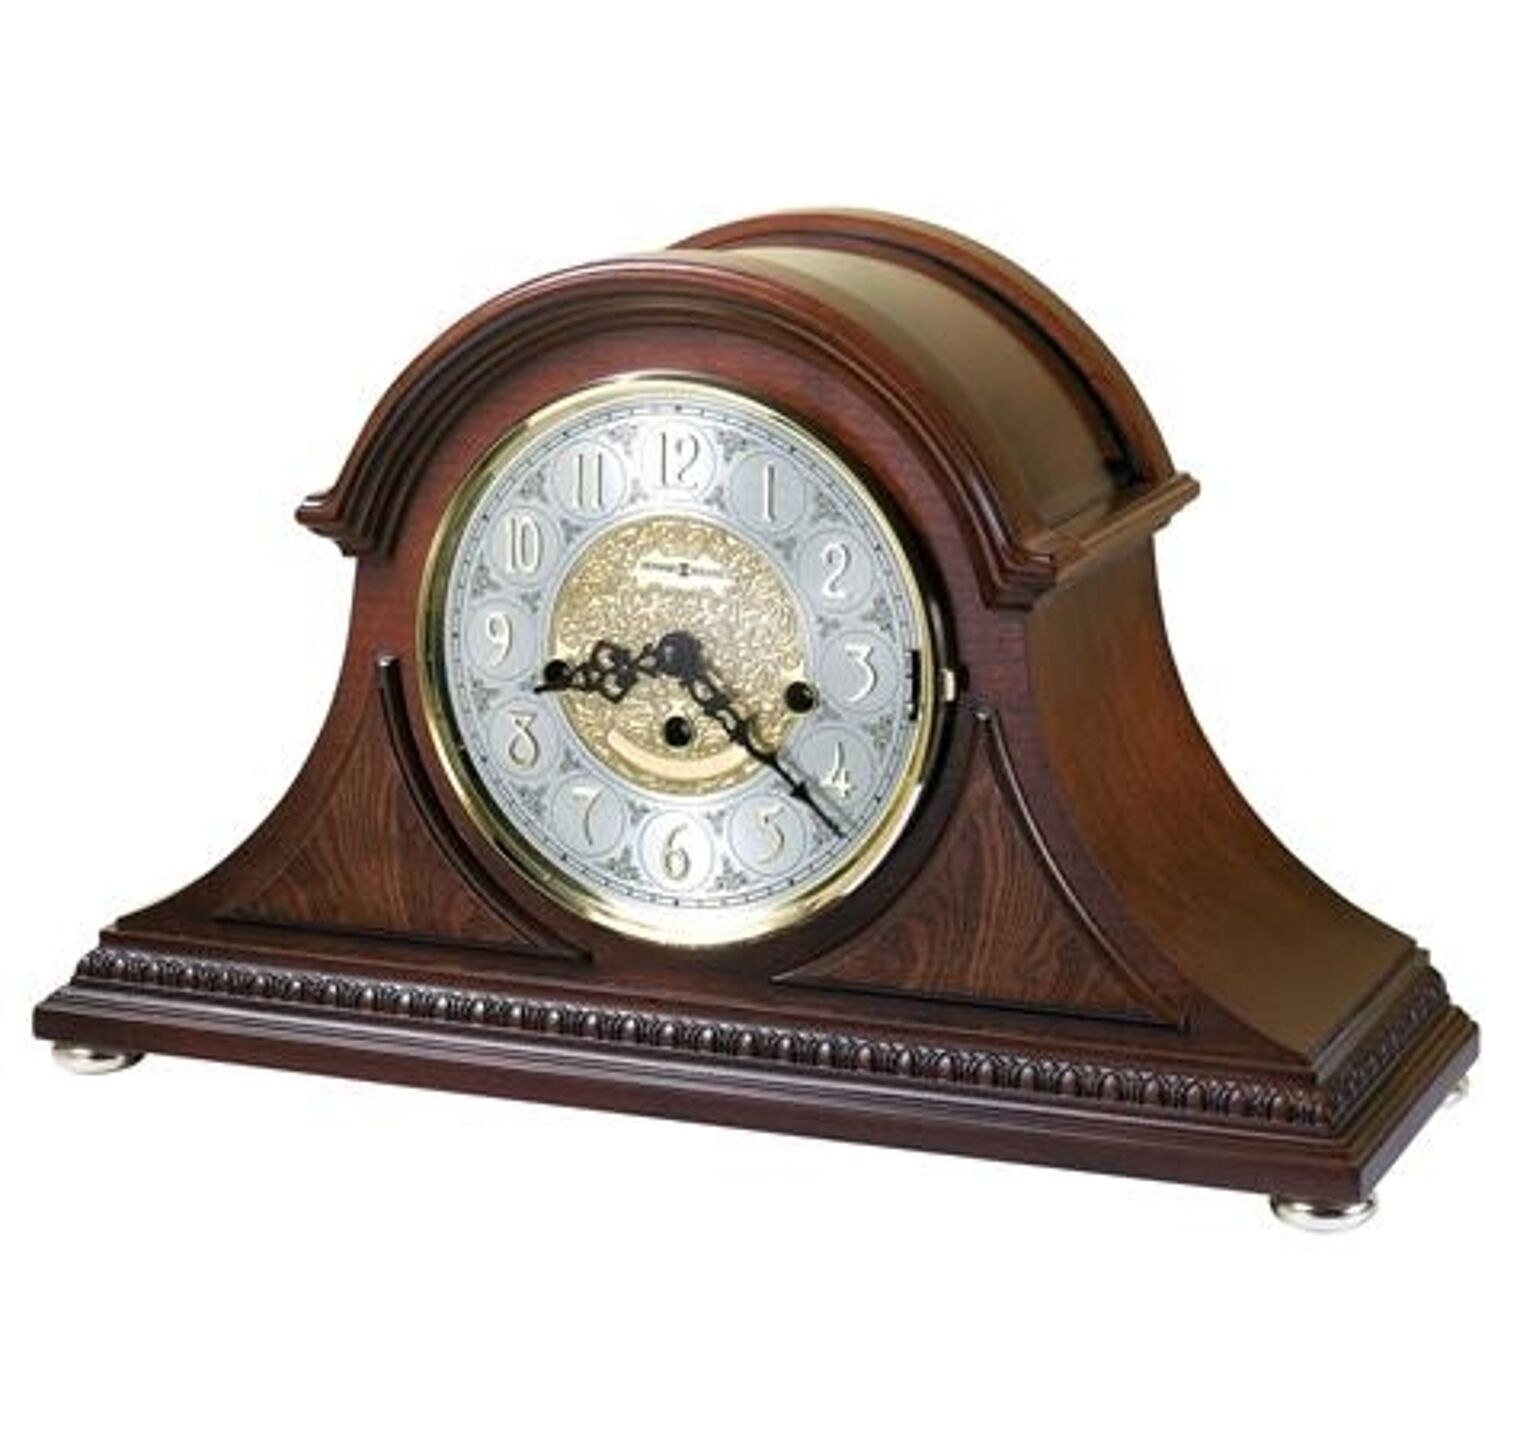 【正規輸入品】 アメリカ ハワードミラー 630-200 HOWARD MILLER BARRETT 機械式置き時計